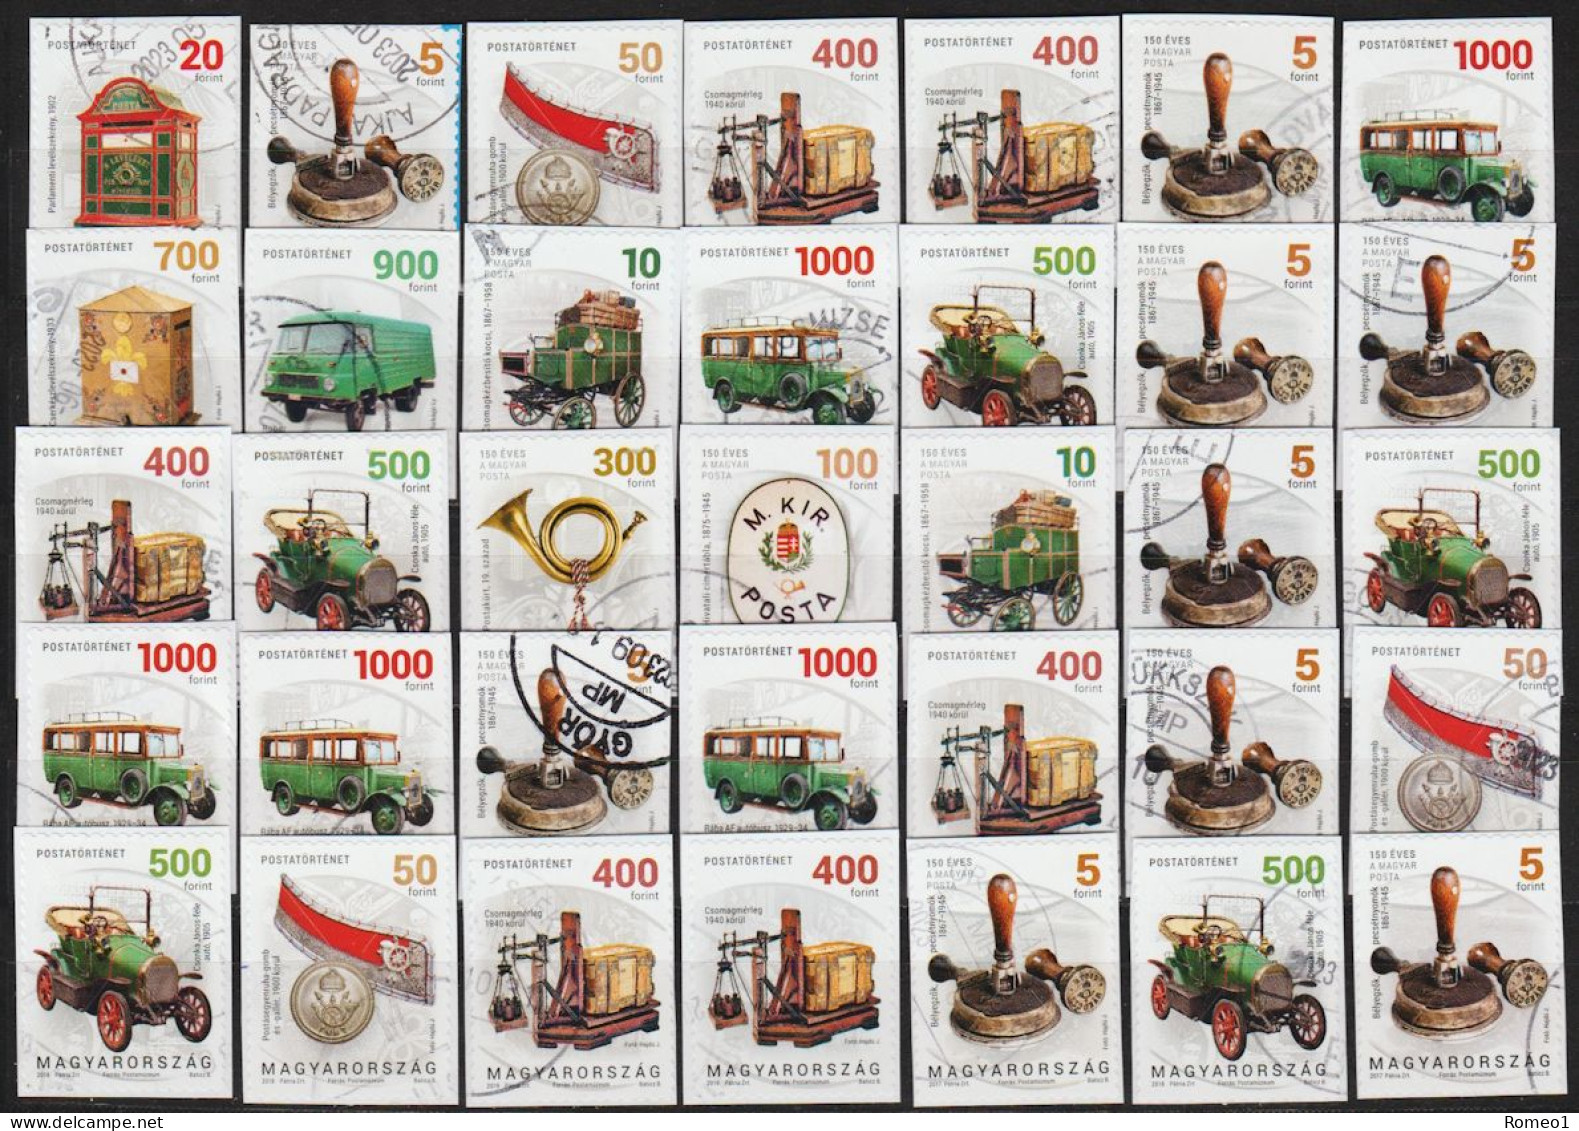 2017/19: Ungarn "Postgeschichte" 35 Marken Gest. / Hongrie "Histoire Postale" 35 Pieces Obl. (d831) - Used Stamps